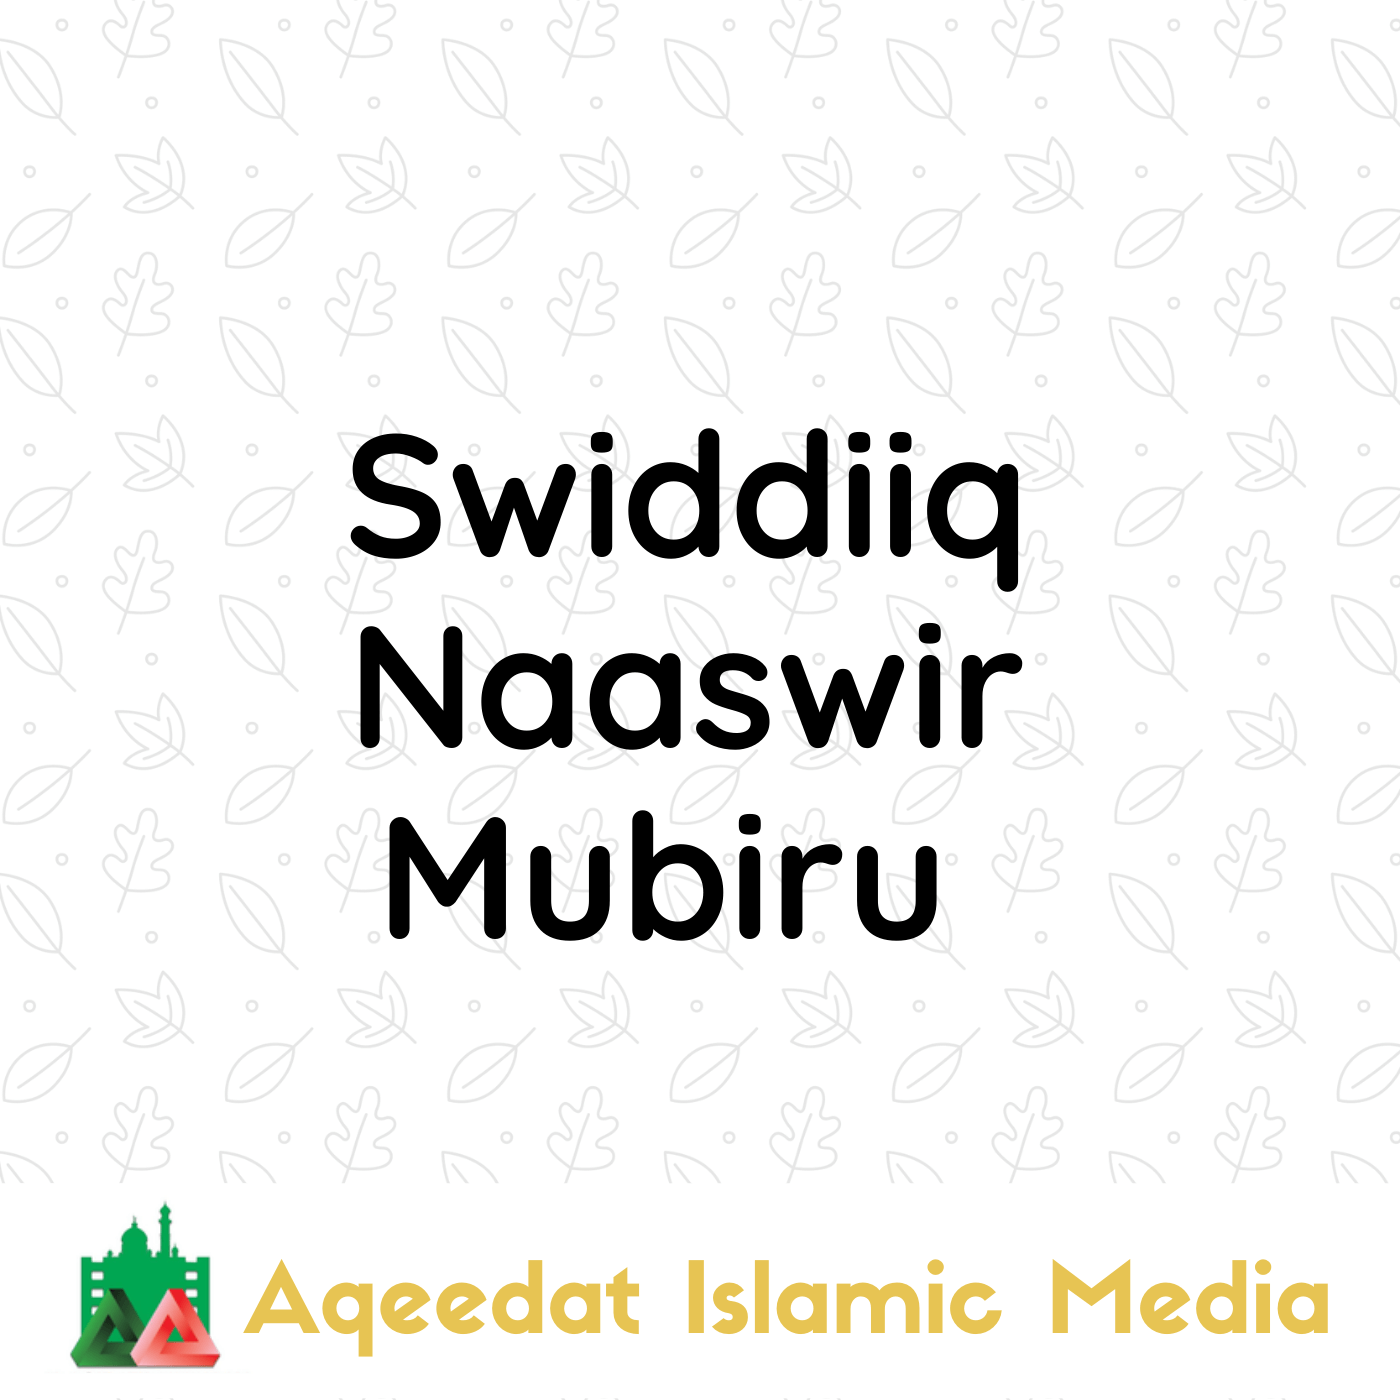  Swiddiiq Naaswir Mubiru